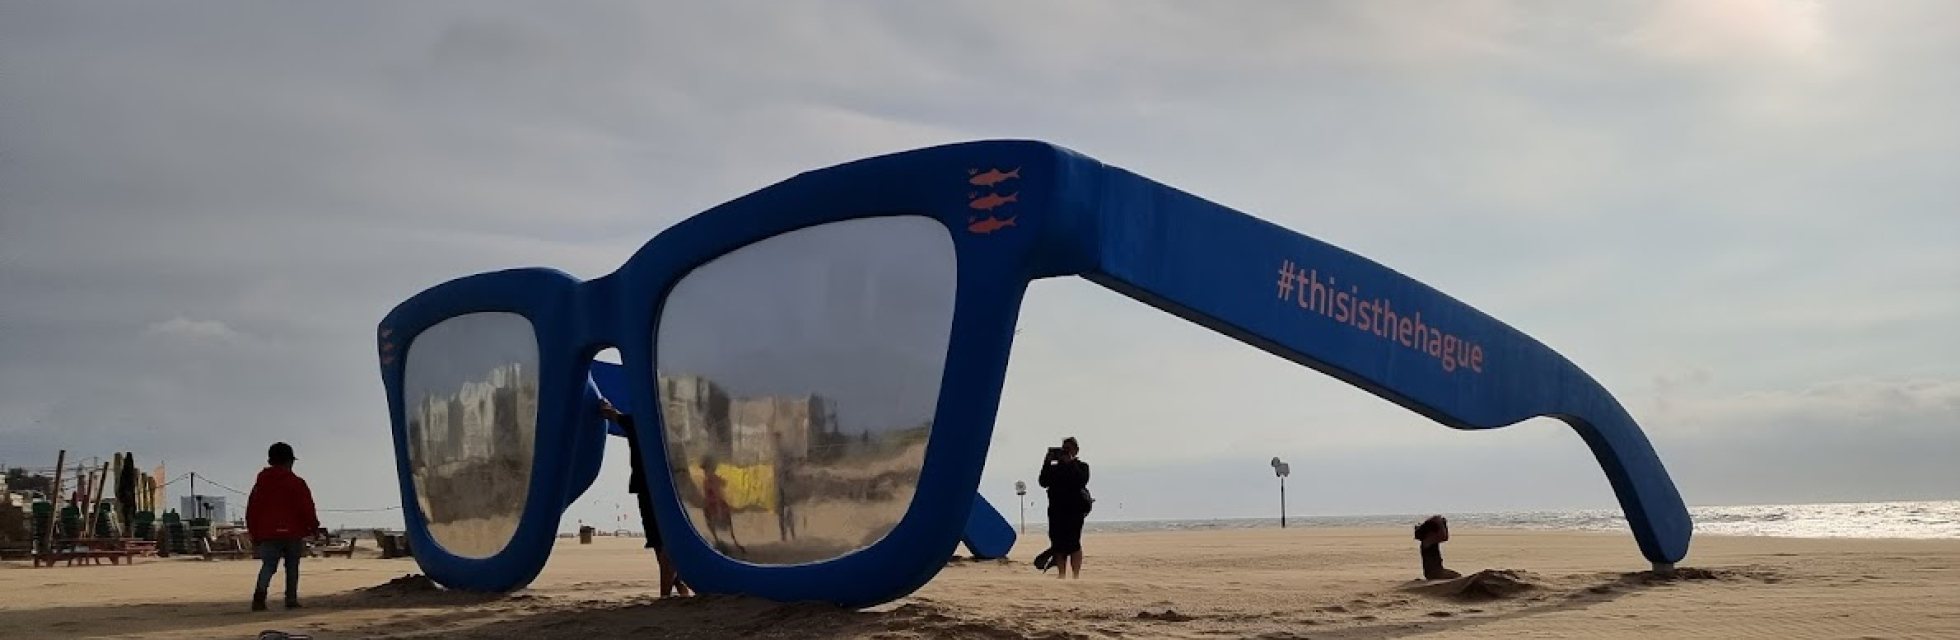 Sunglasses artwork at Scheveningen beach